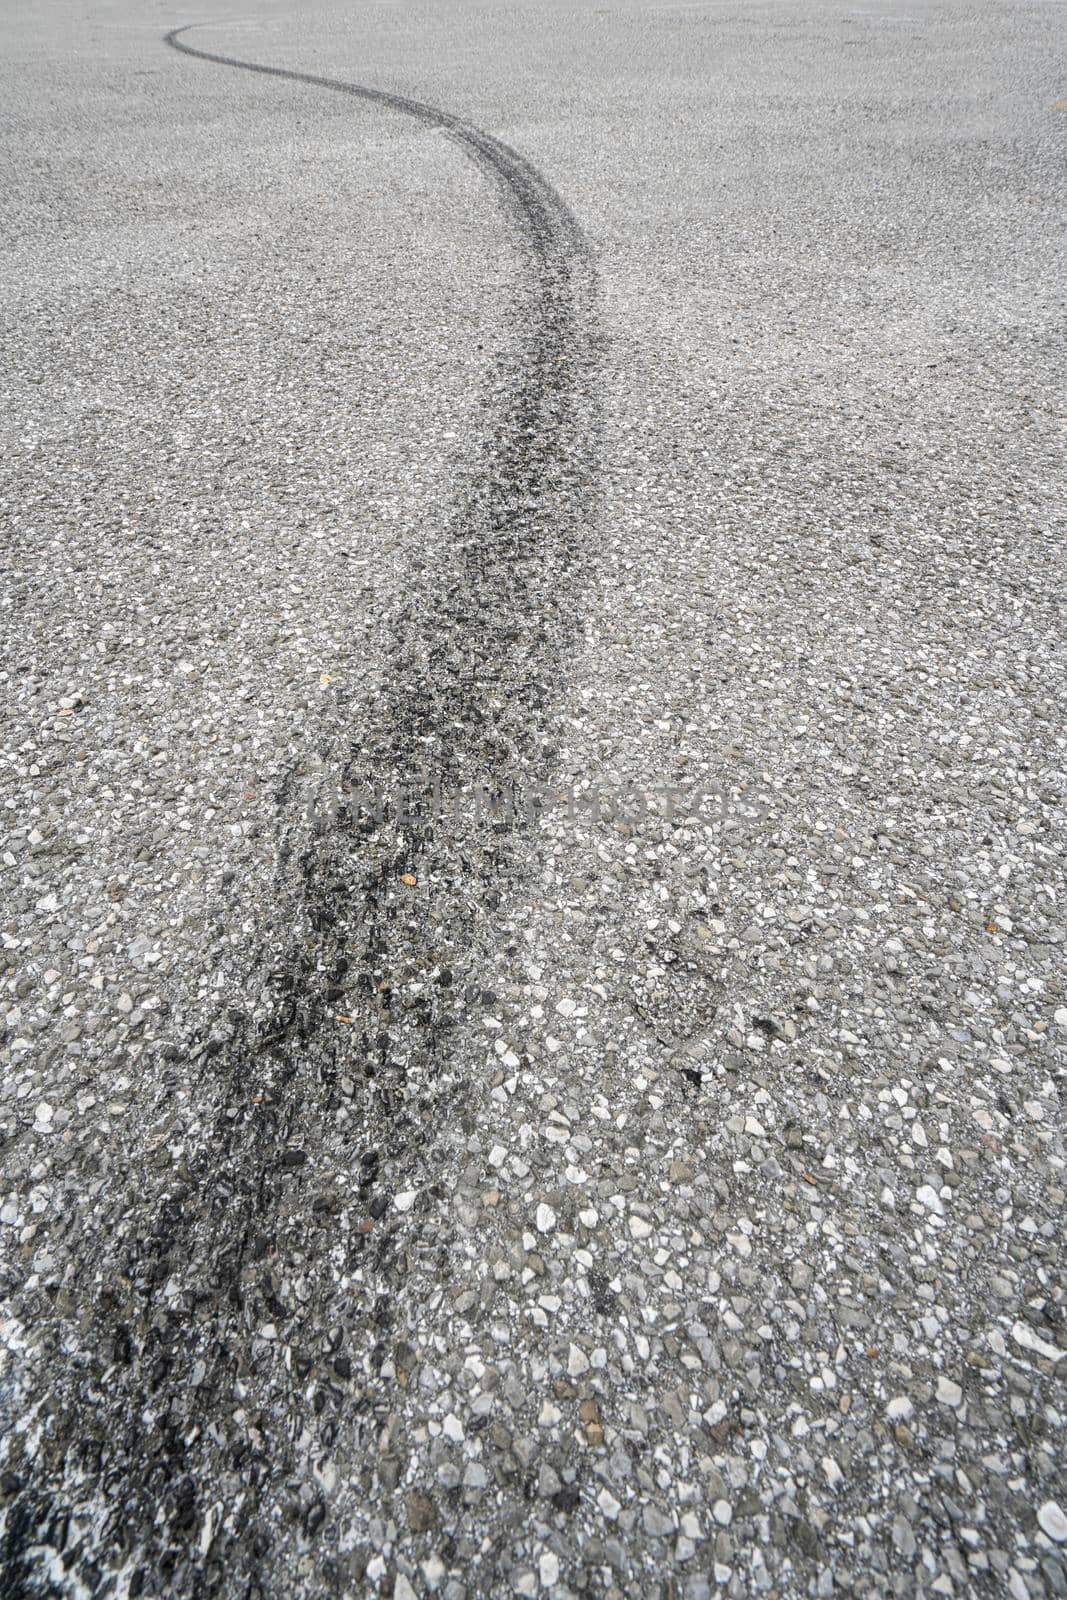 tire slip marks on the asphalt